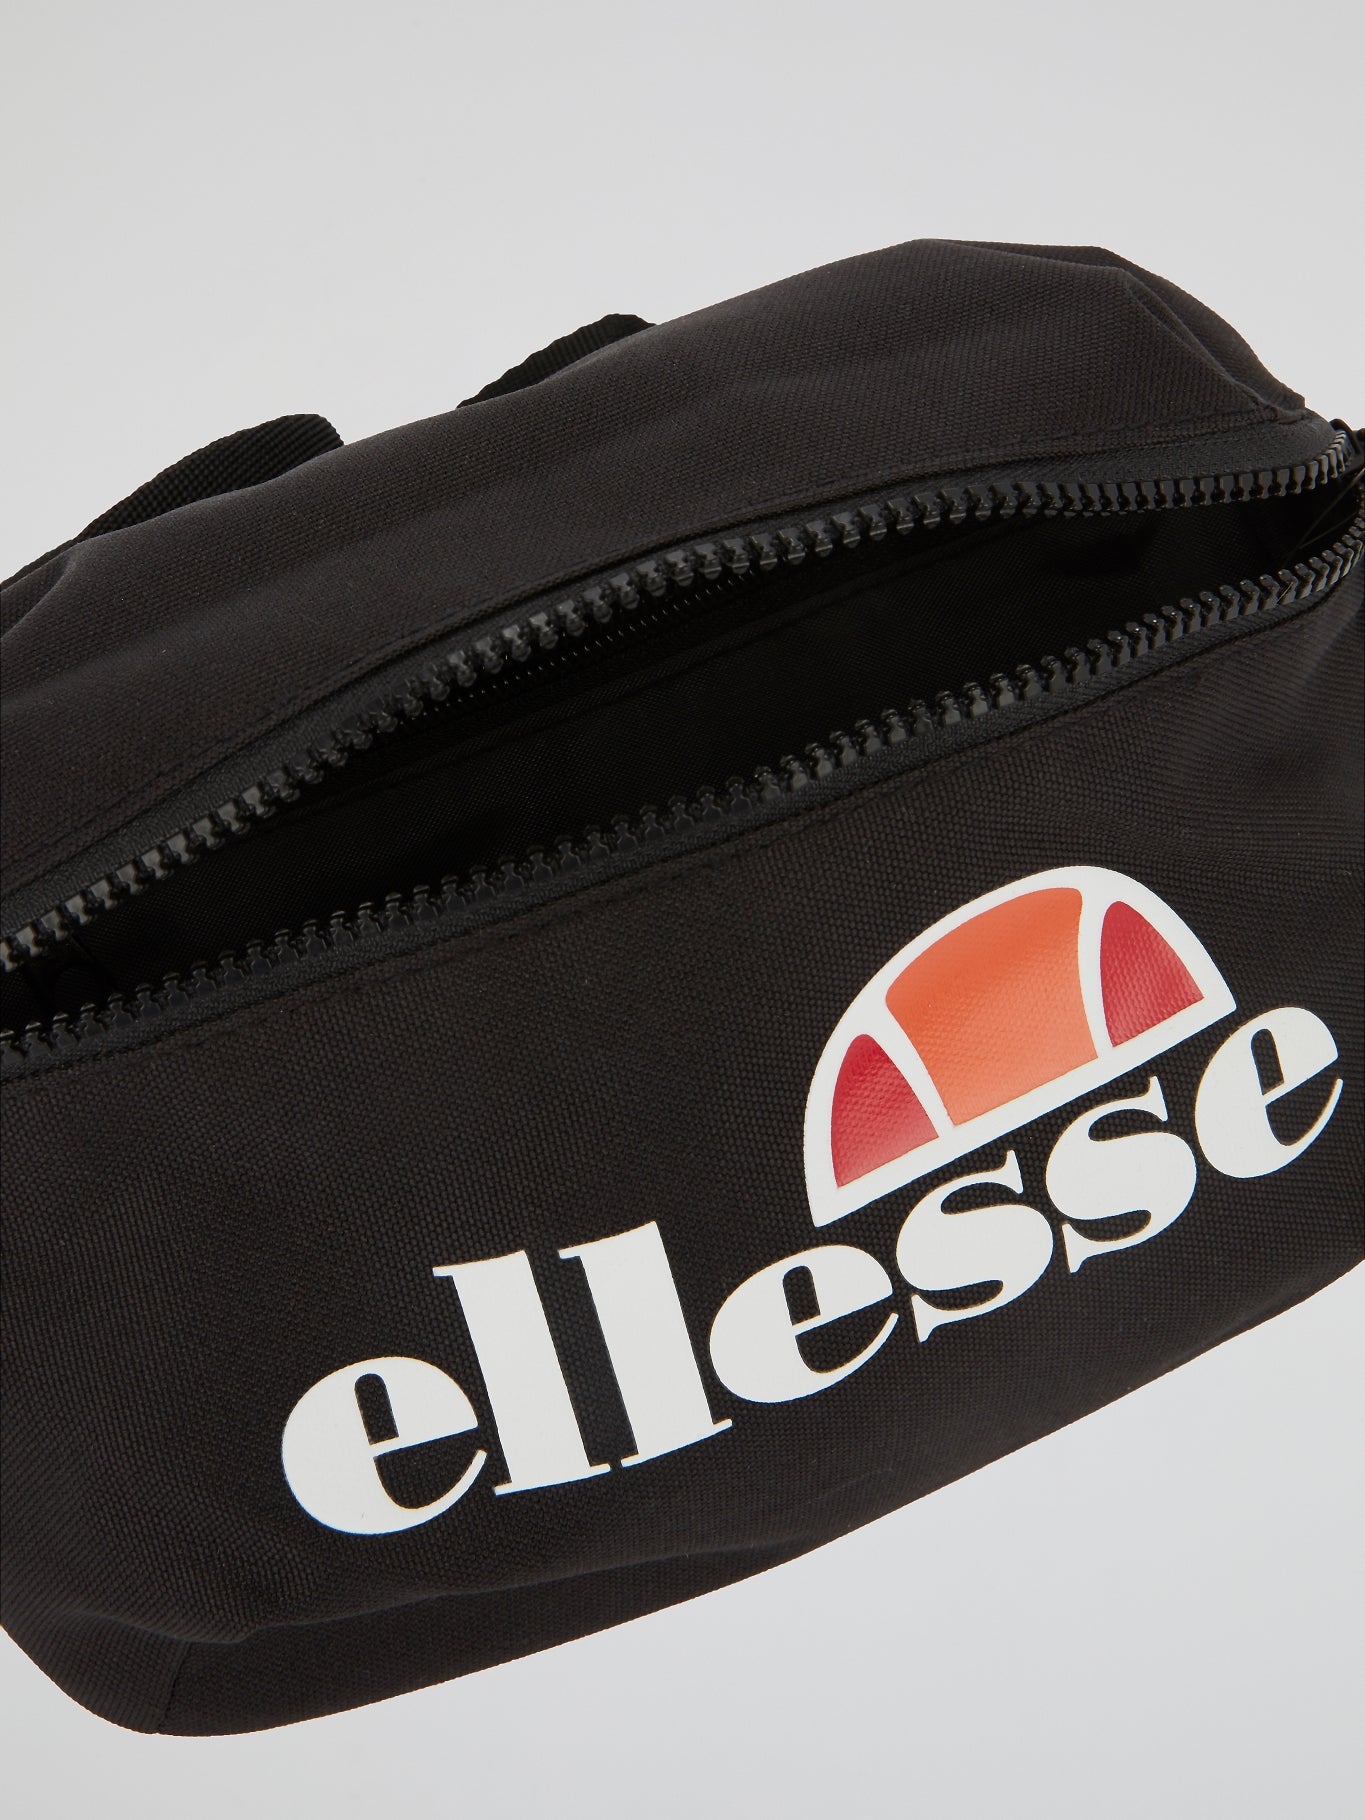 krassen Indirect Krijger Rosca Black Crossbody Bag – Maison-B-More Global Store